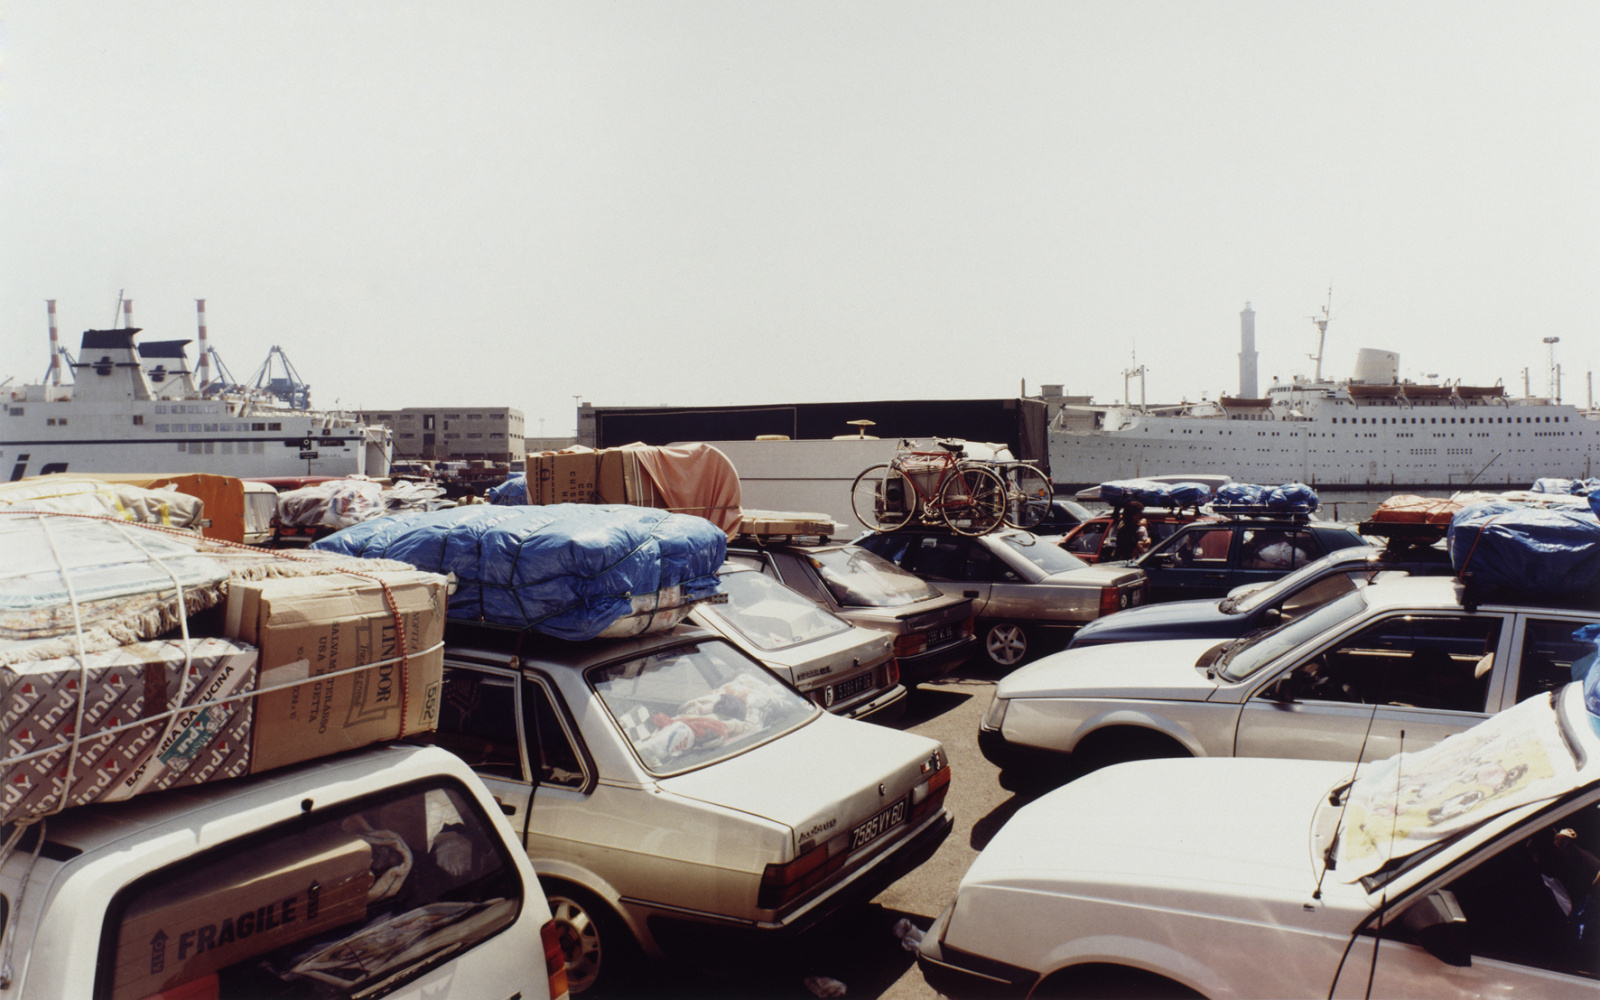 Fotografie mehrerer geparkter Autos, alle voll beladen. Im Bildhintergrund sind zwei große Kreuzfahrtschiffe.